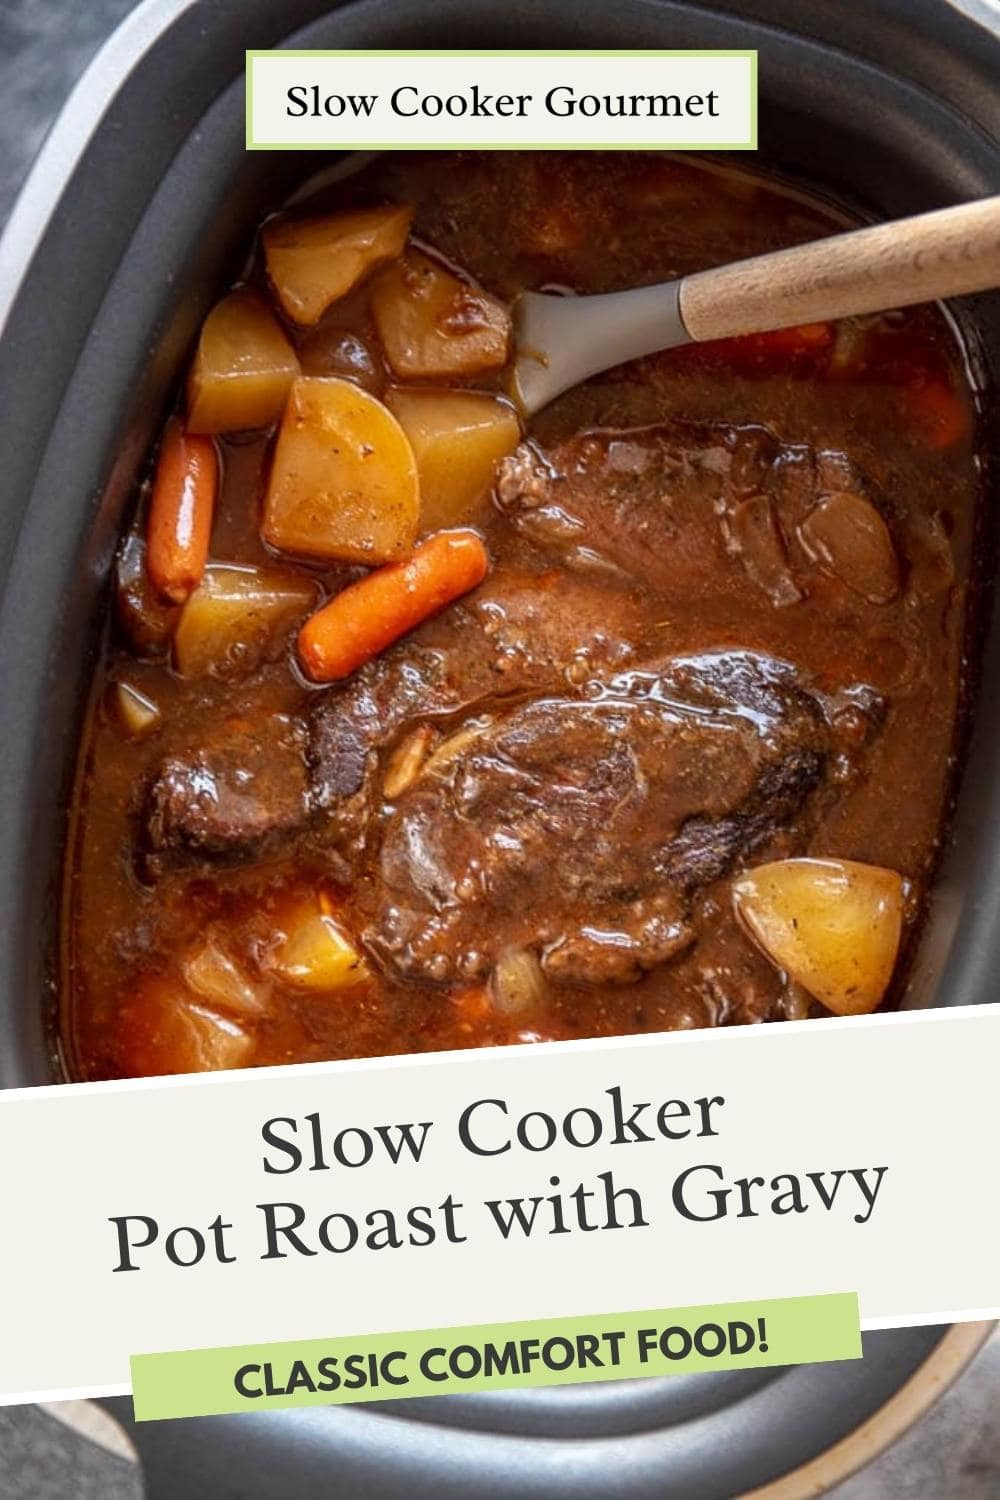 Slow Cooker Pot Roast With Gravy - Slow Cooker Gourmet